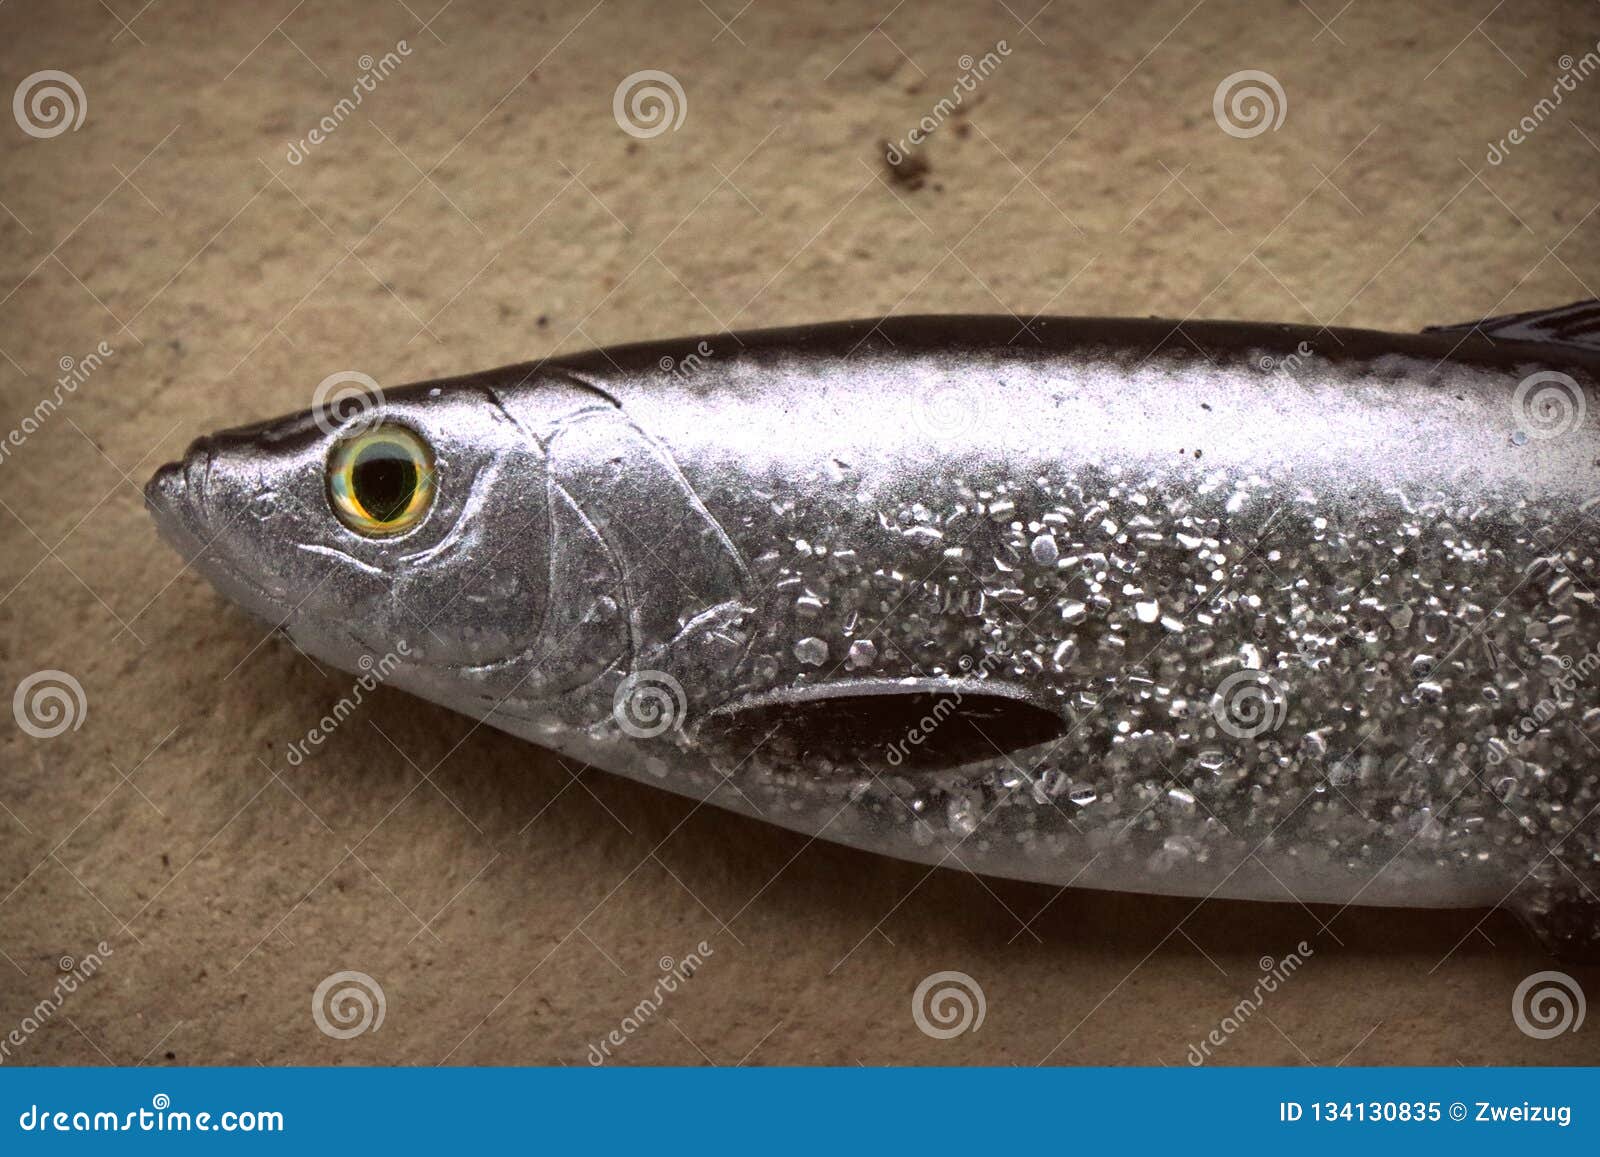 Large Life-like Soft Fishing Lure Herring Stock Image - Image of